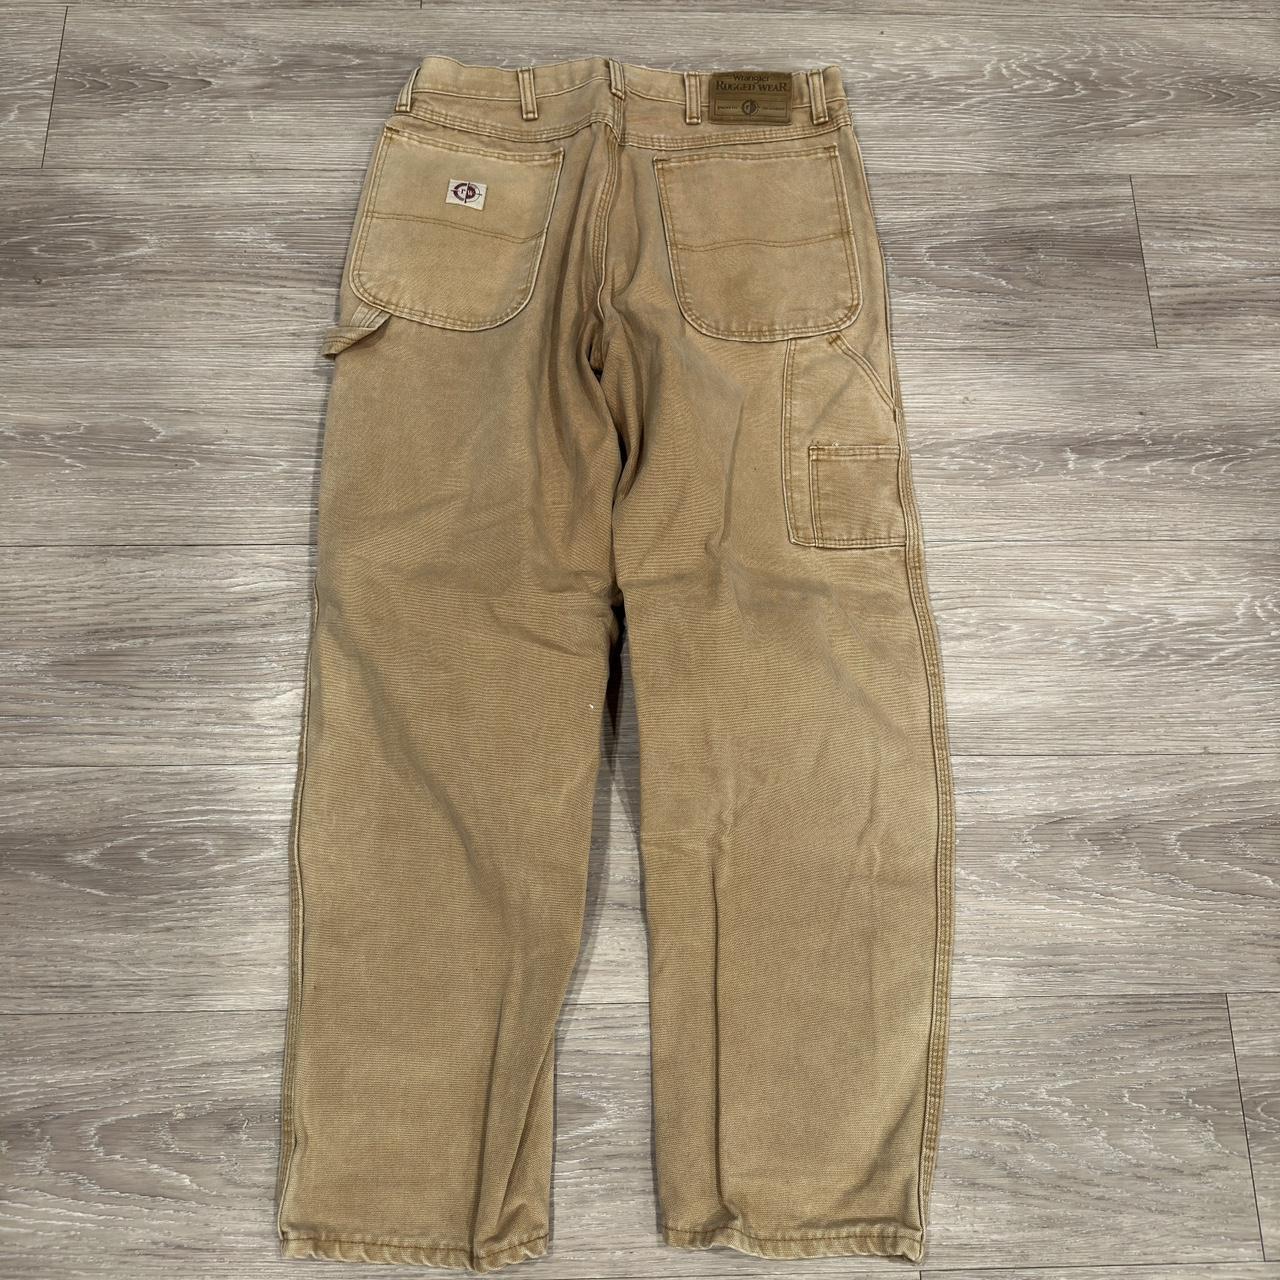 Vintage Faded Wrangler Carpenter Pants 33x30 Great... - Depop